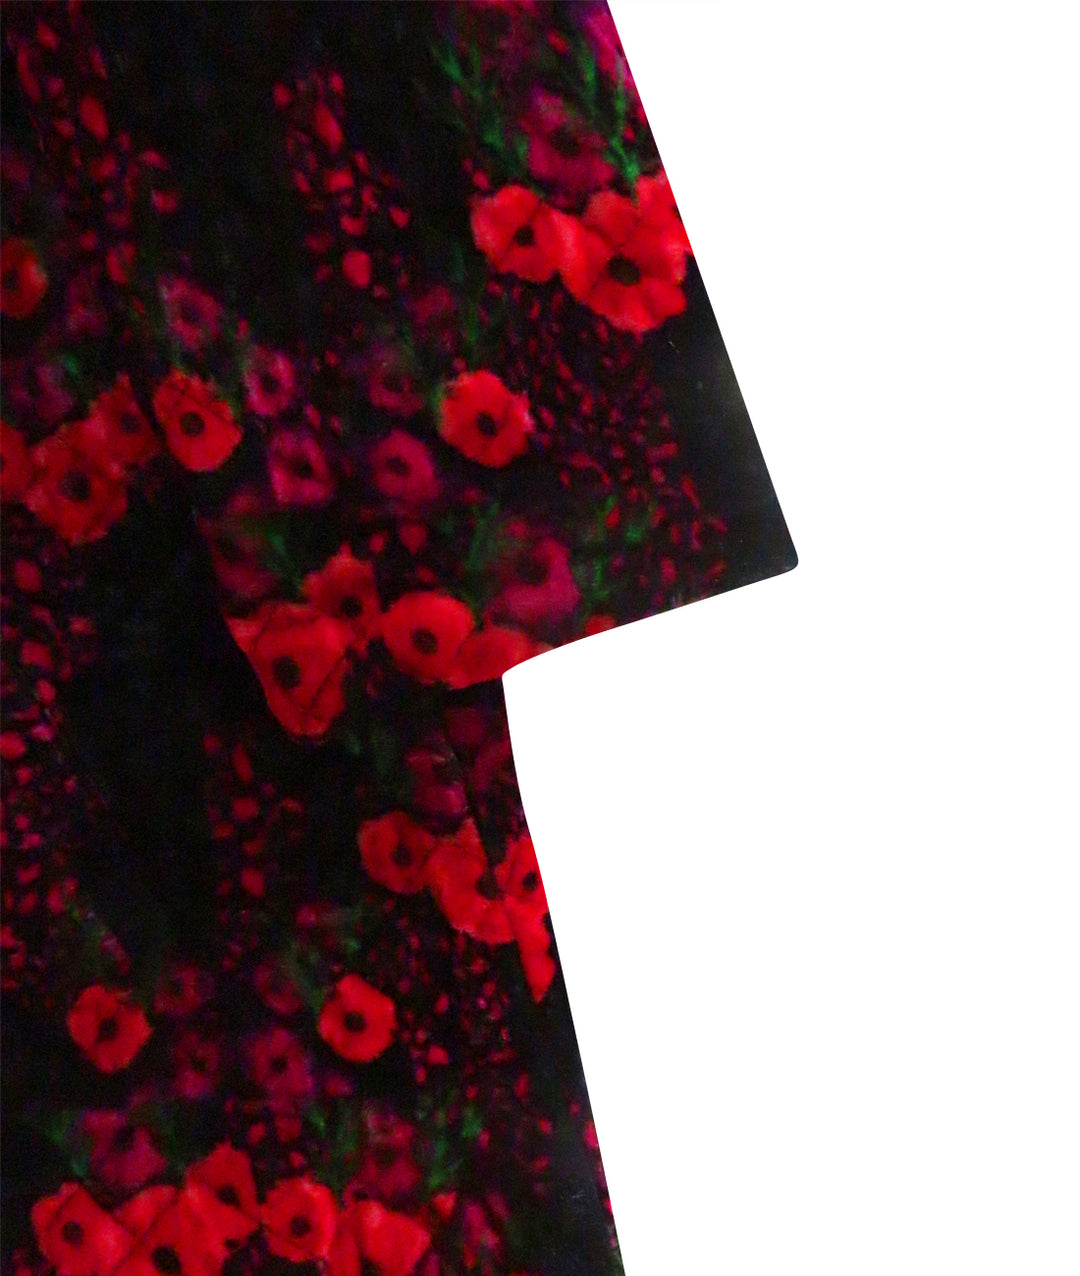 Children's Silk Velvet Floral/Black  Reversible Coat